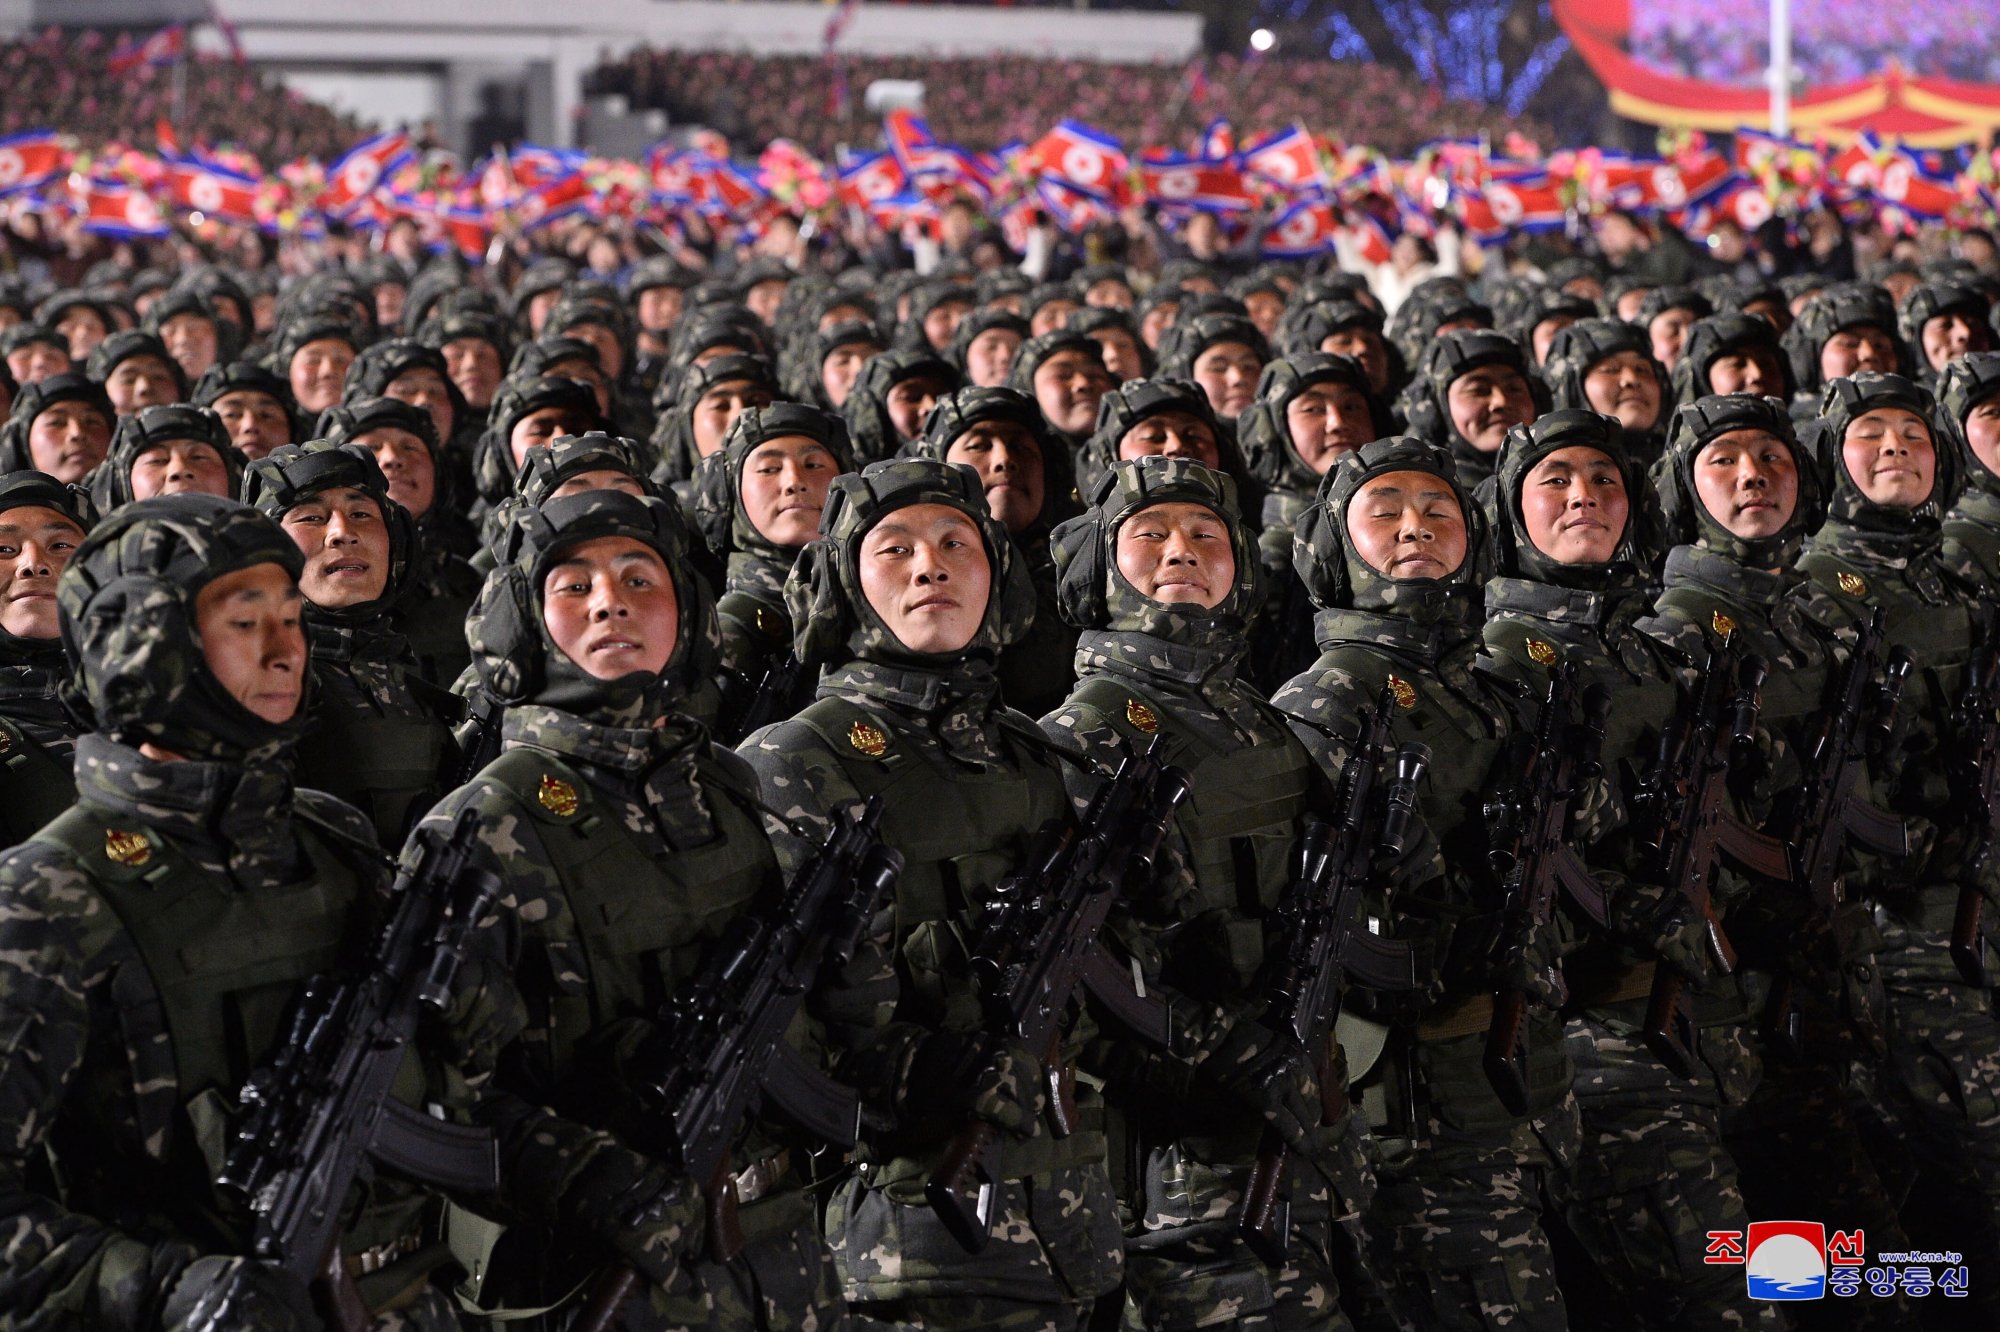 cdn-zdjecie-wt7g5a-parada-wojskowa-z-okazji-75-lecia-koreanskiej-armii-ludowej-6742039.jpg